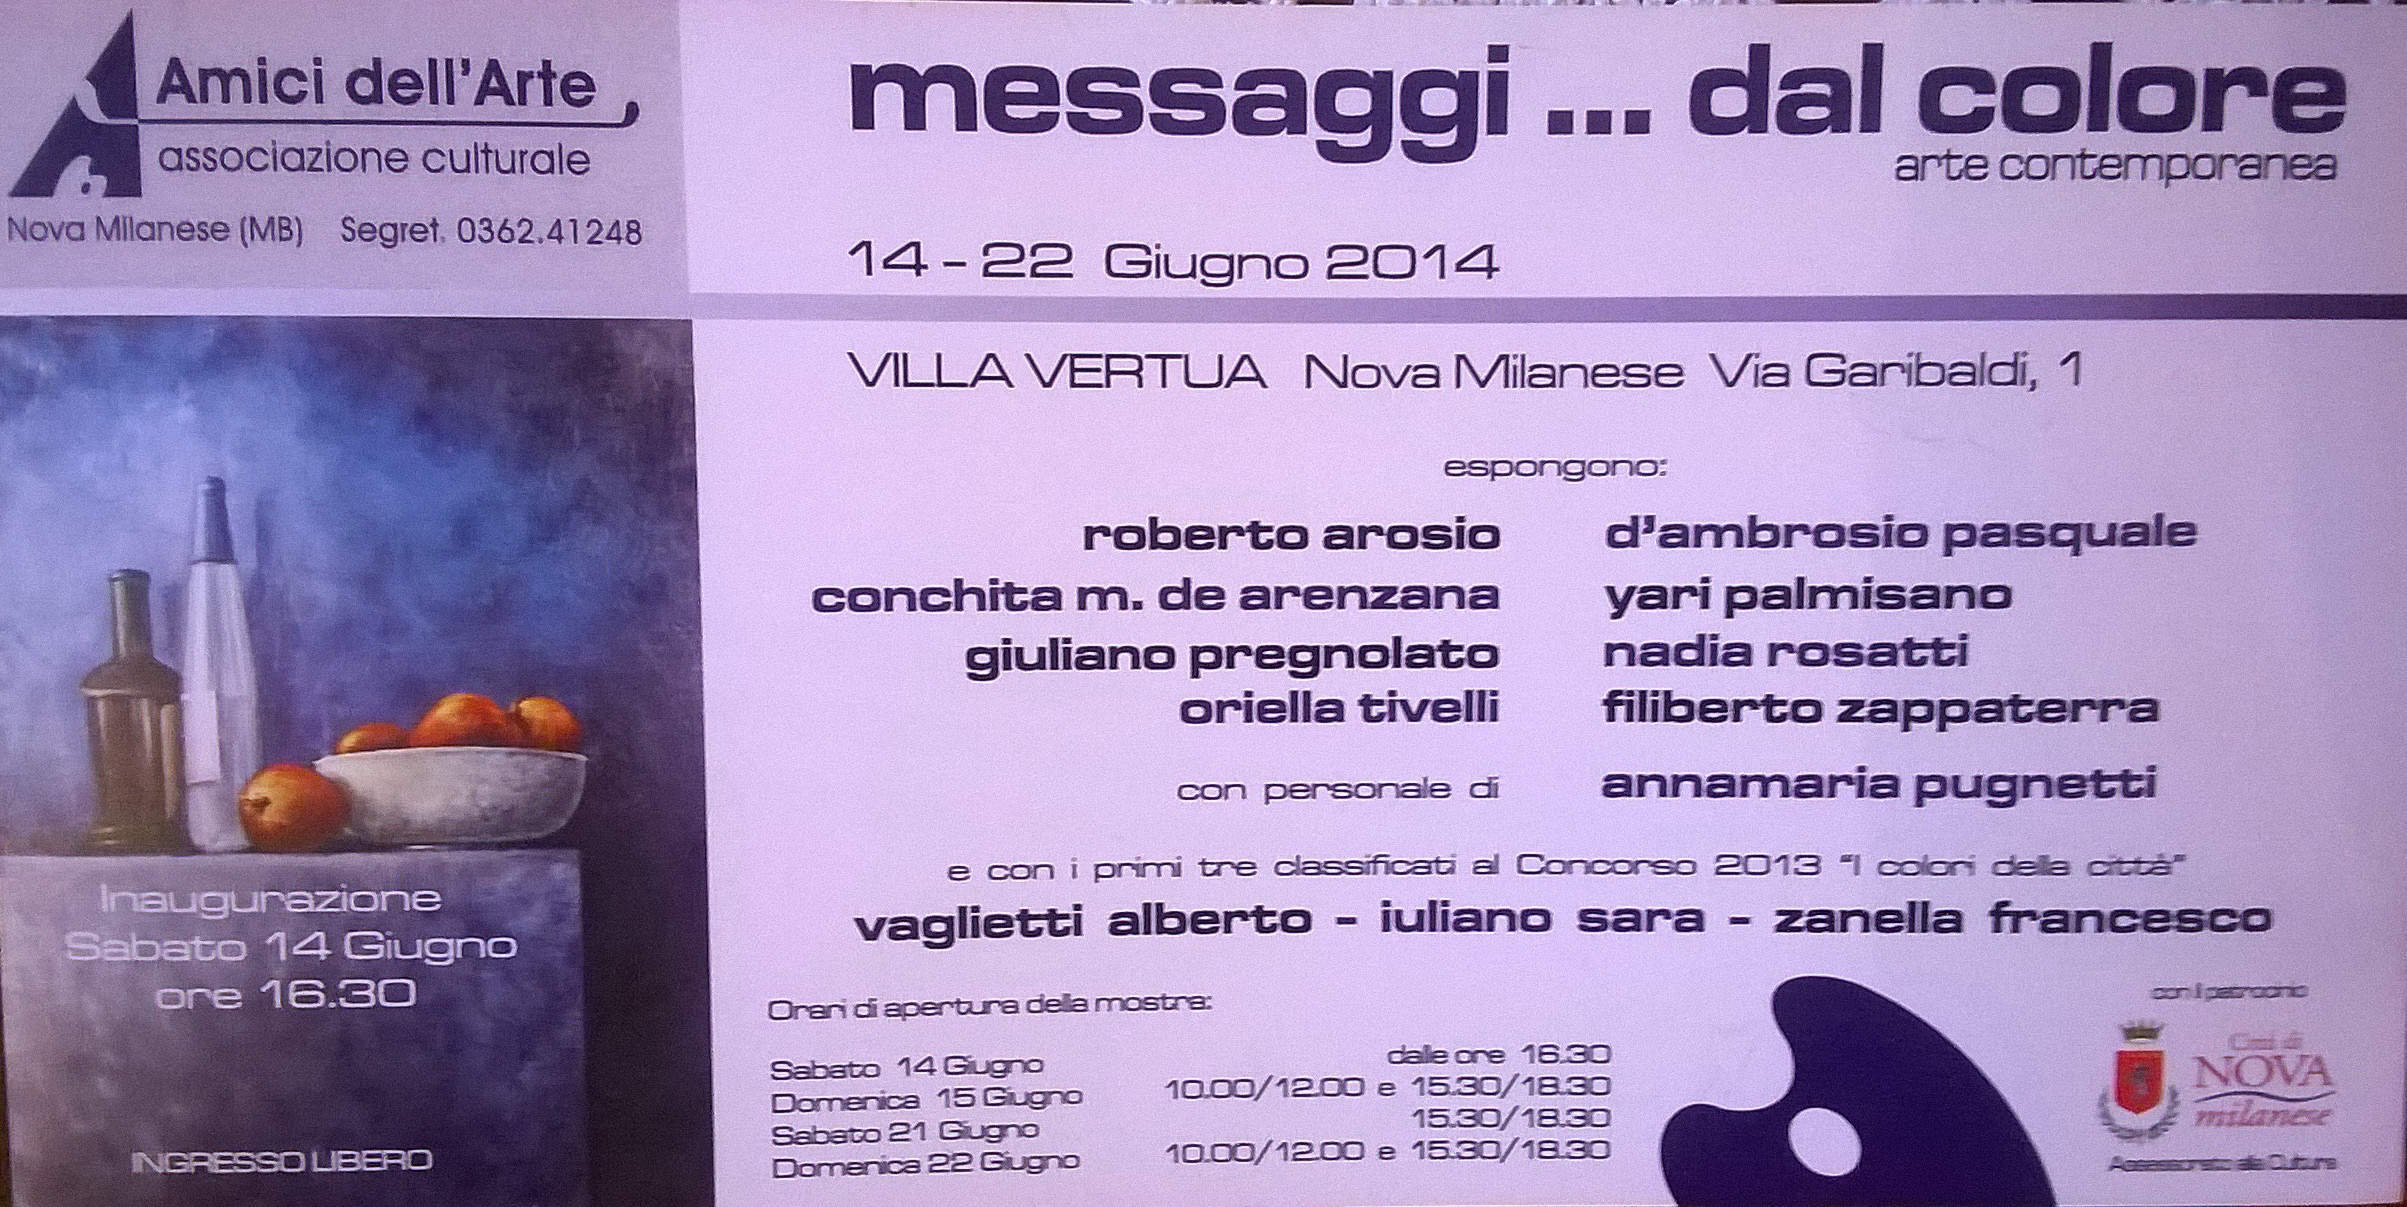 2014 Messaggi..dal colore - Villa Vertua - Nova